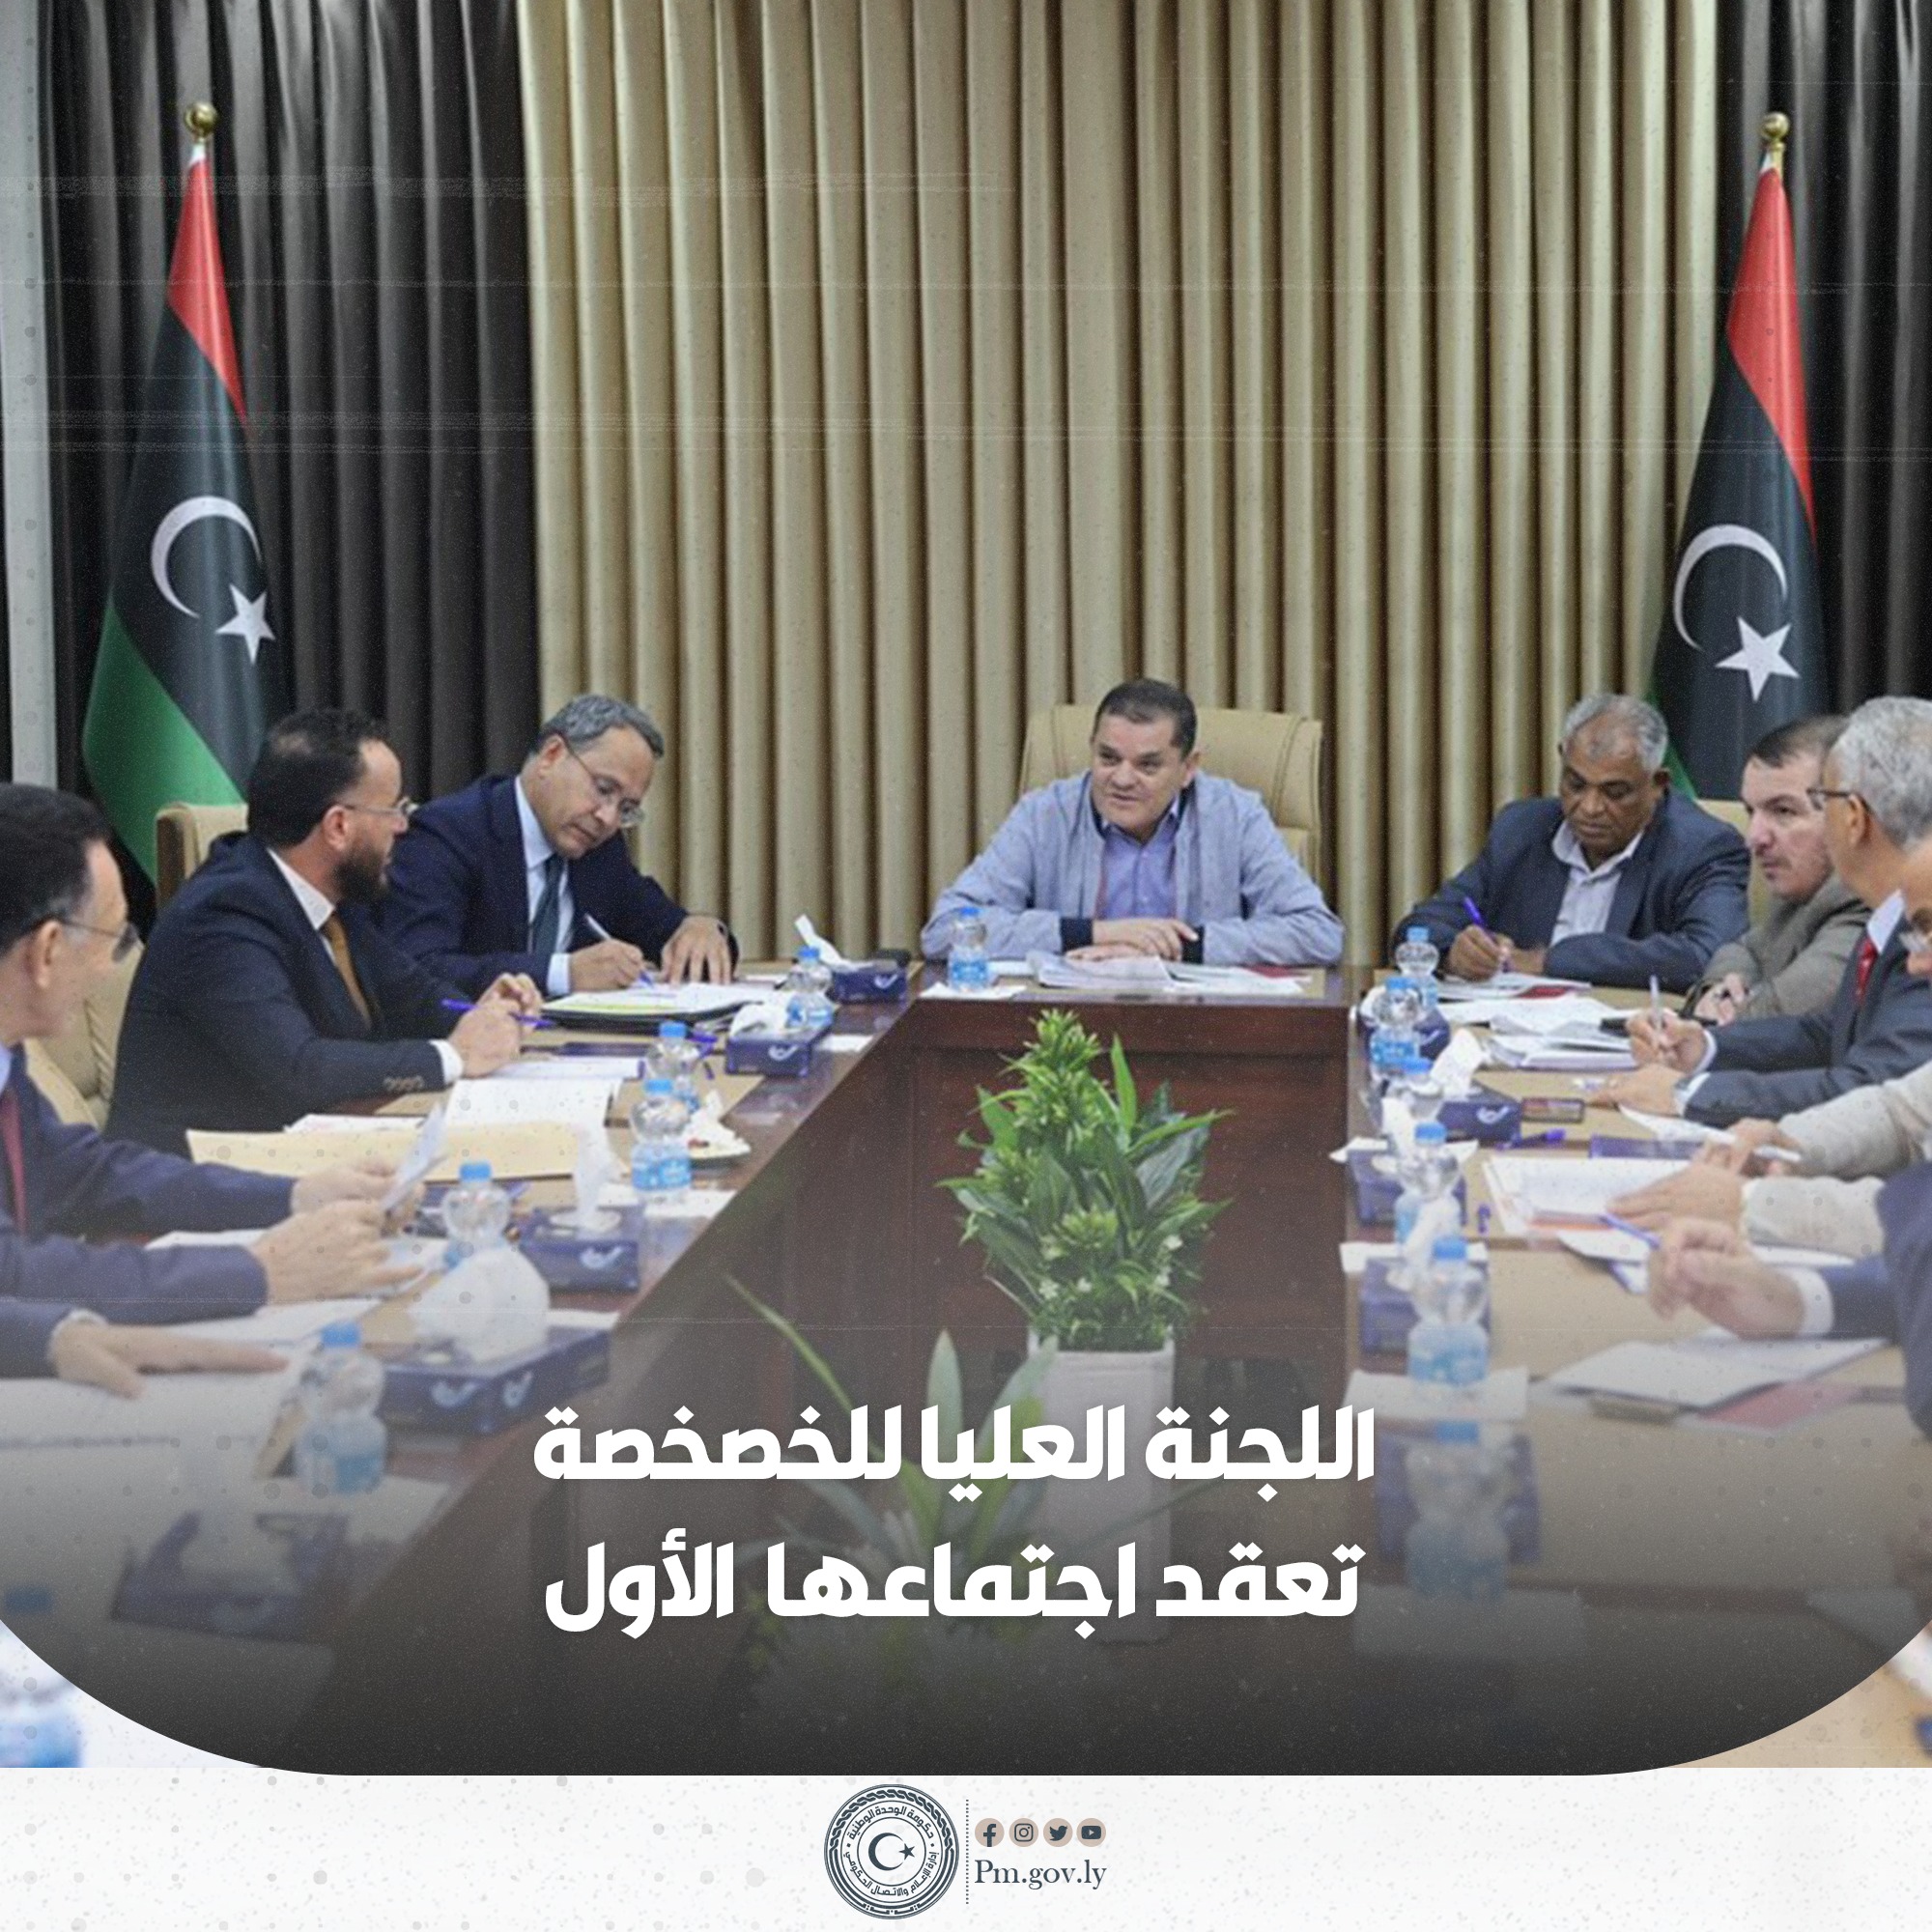 اللجنة العليا للخصخصة تعقد اول اجتماع لها منذ العام 2009 برئاسة رئيس الحكومة " عبدالحميد الدبيبة " .